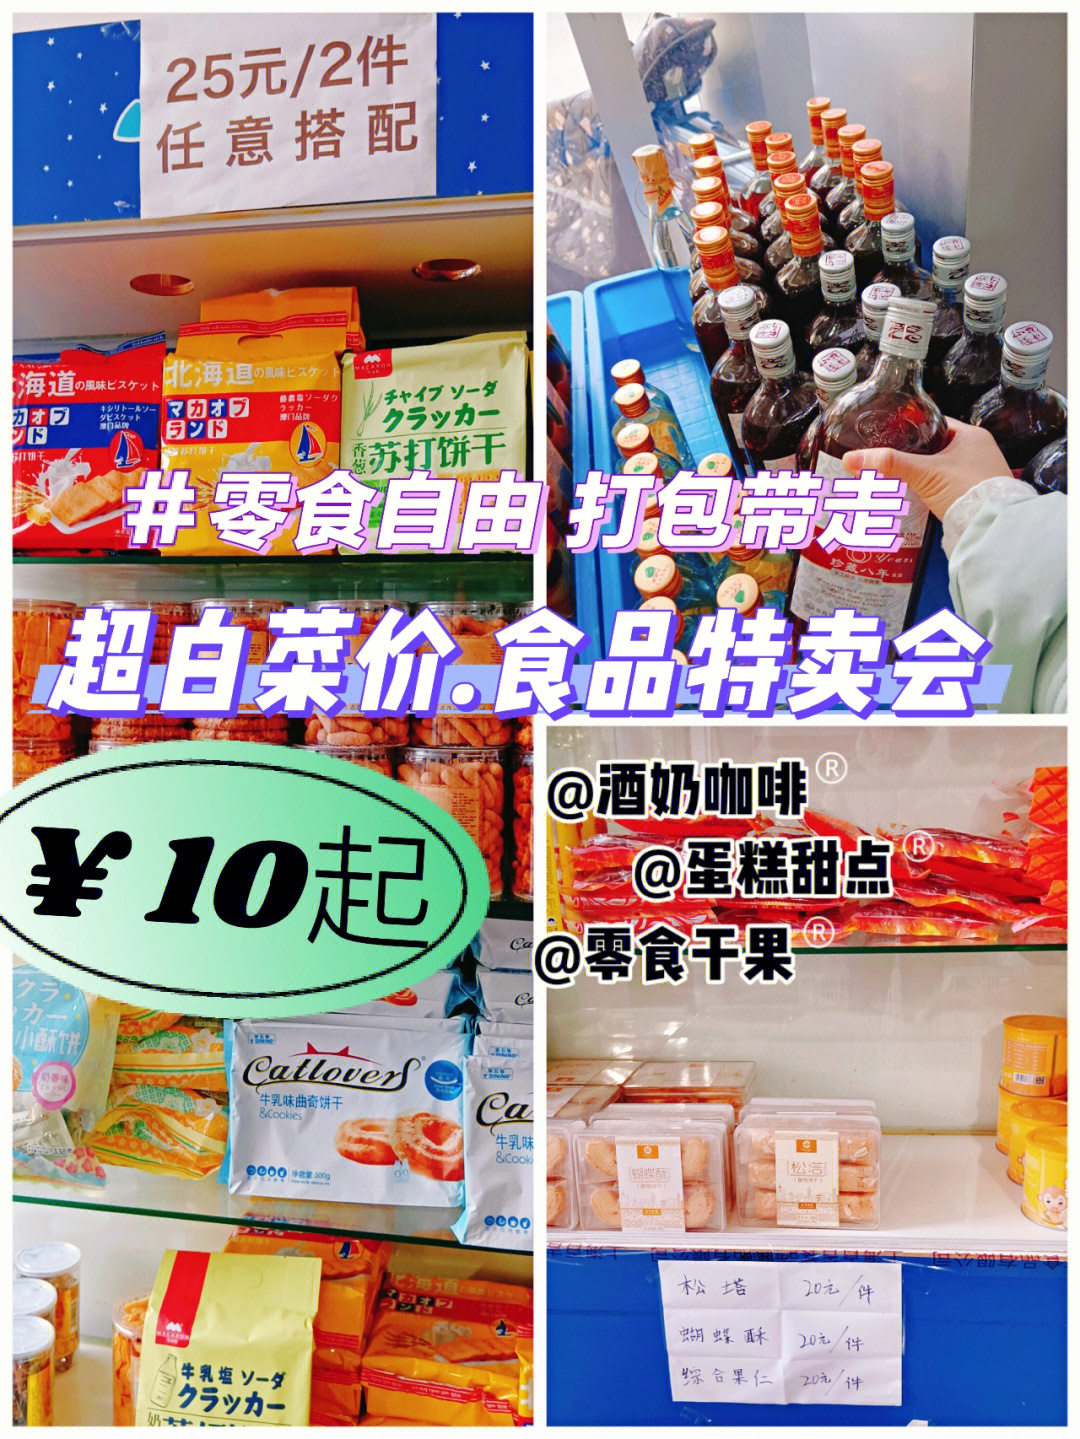 比网购还便宜75上海食品折扣店物价退5年